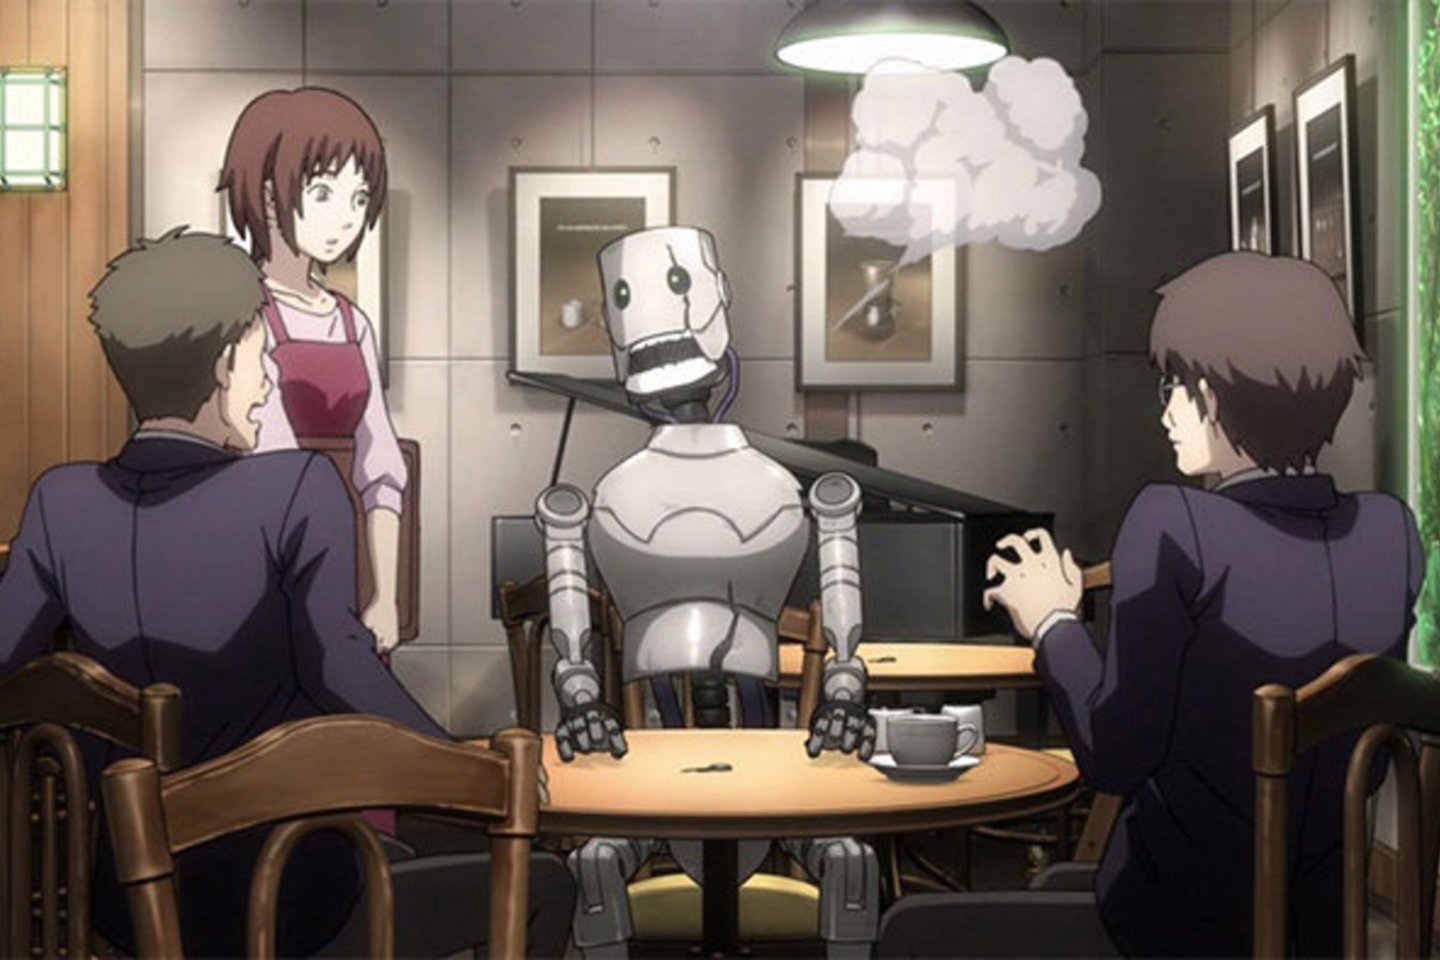  Animacinis filmas „Metas pas Ievą“ perkelia į tuos laikus, kai robotai androidai nebebus vien paprasti buitiniai prietaisai.<br> Filmo kadras.